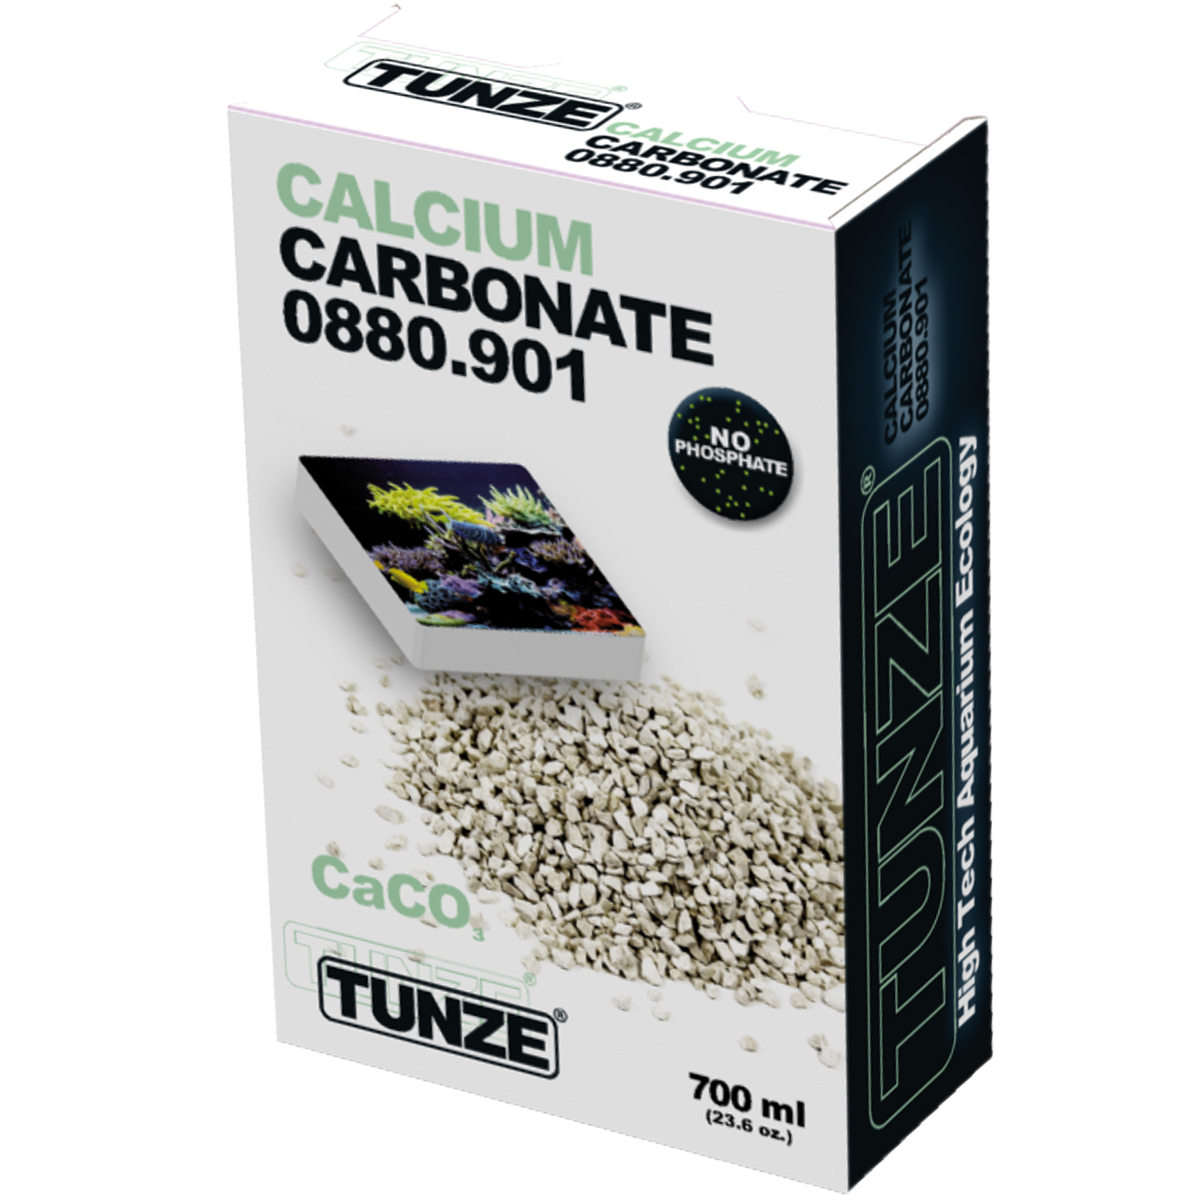 TUNZE Calcium Carbonate 700ml